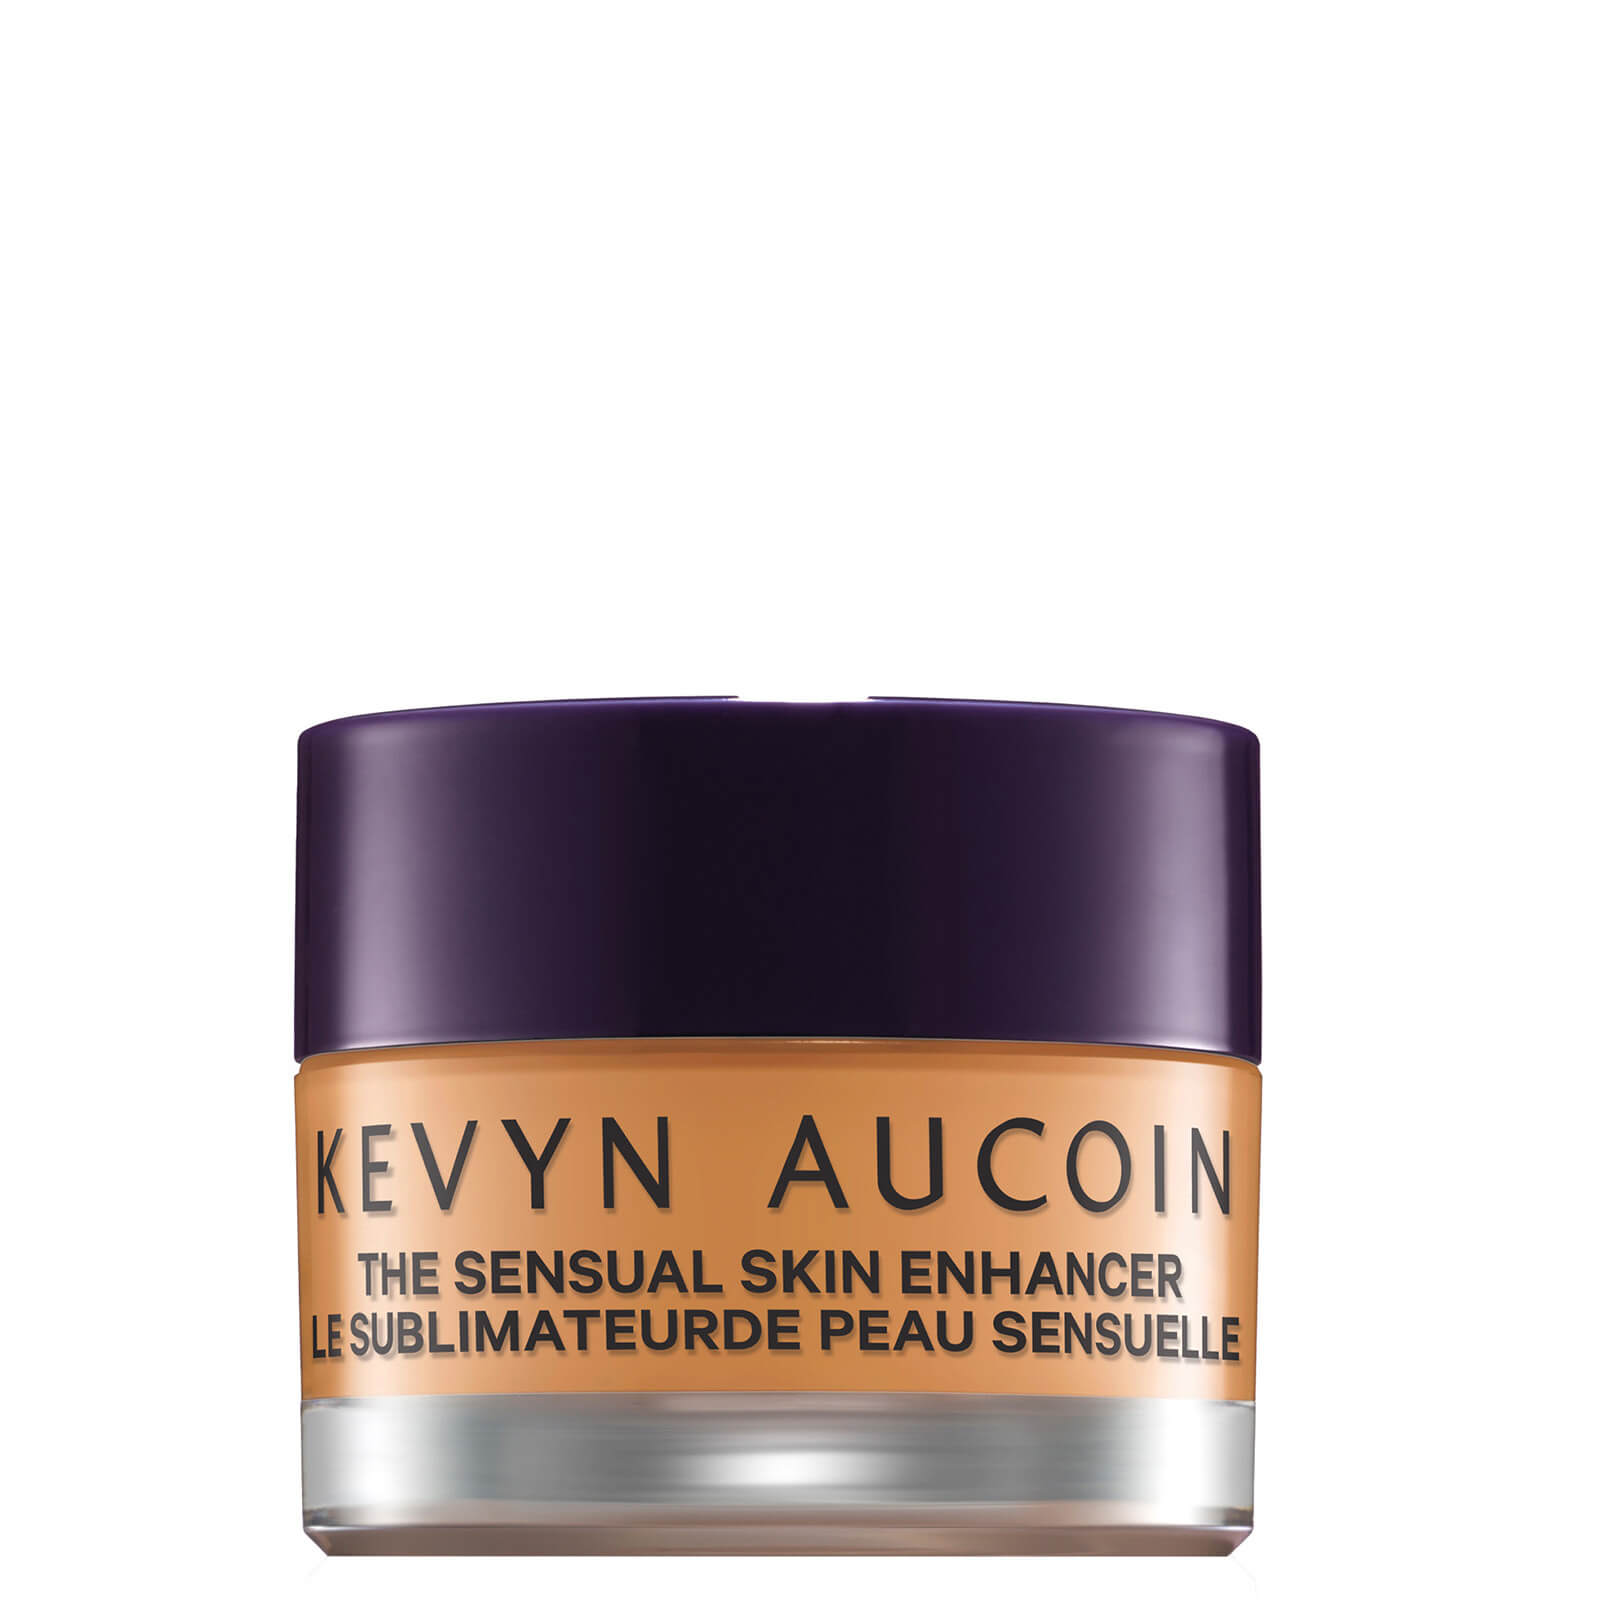 Kevyn Aucoin The Sensual Skin Enhancer 10g (Various Shades) - SX 12